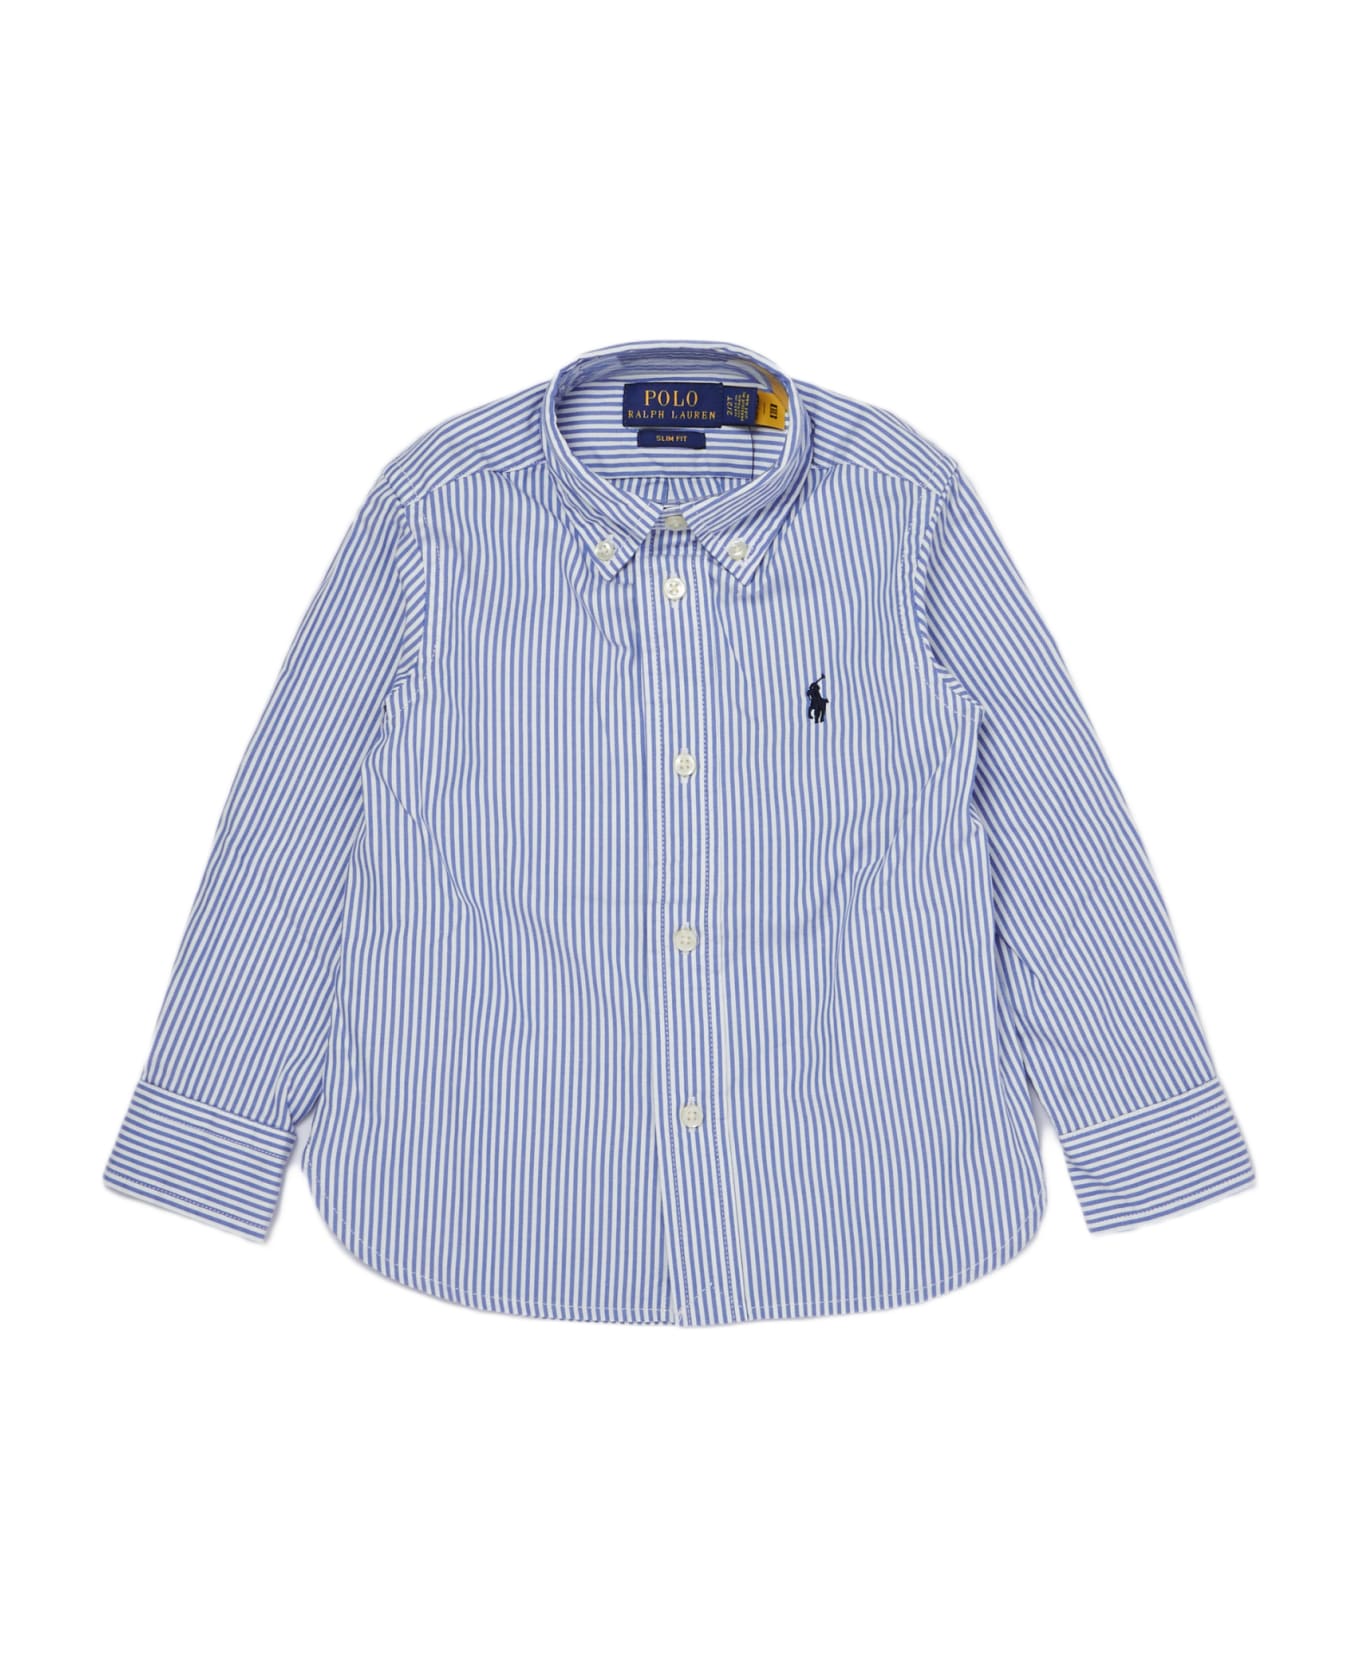 Polo Ralph Lauren Shirt Shirt - RIGA BIANCO-BLU シャツ